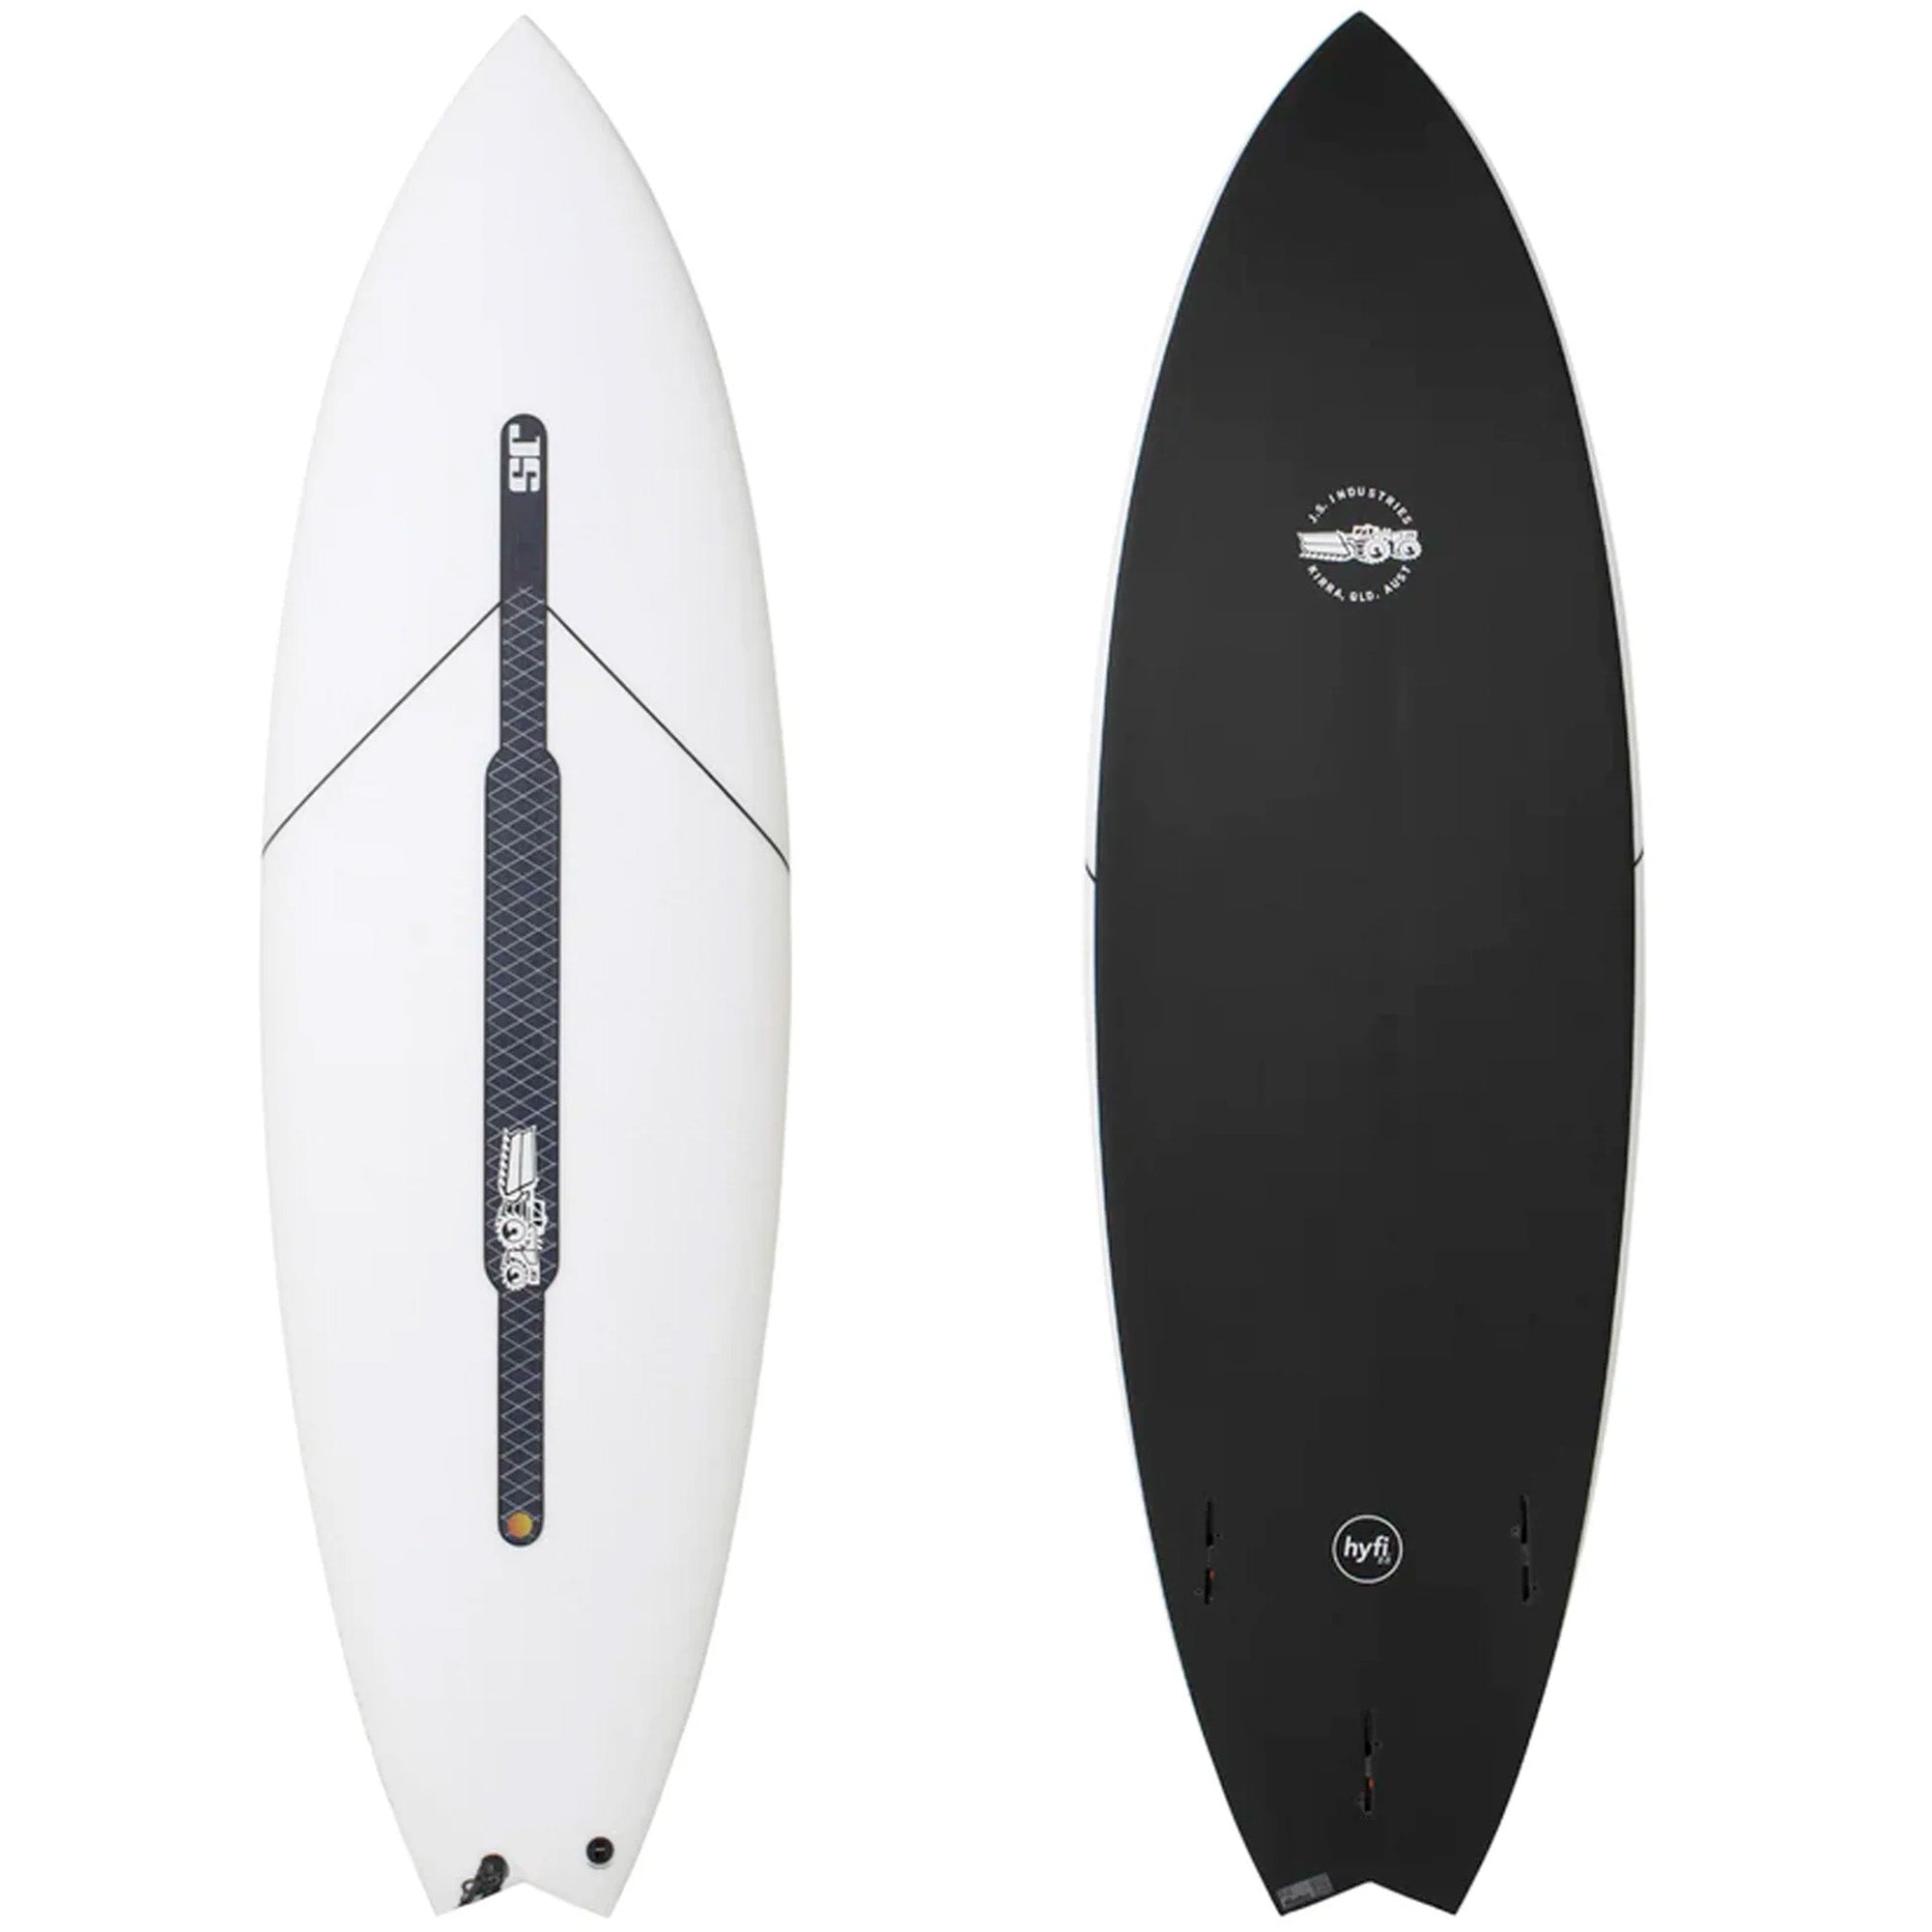 JS Black Baron 2.1 HYFI Surfboard - FCS II